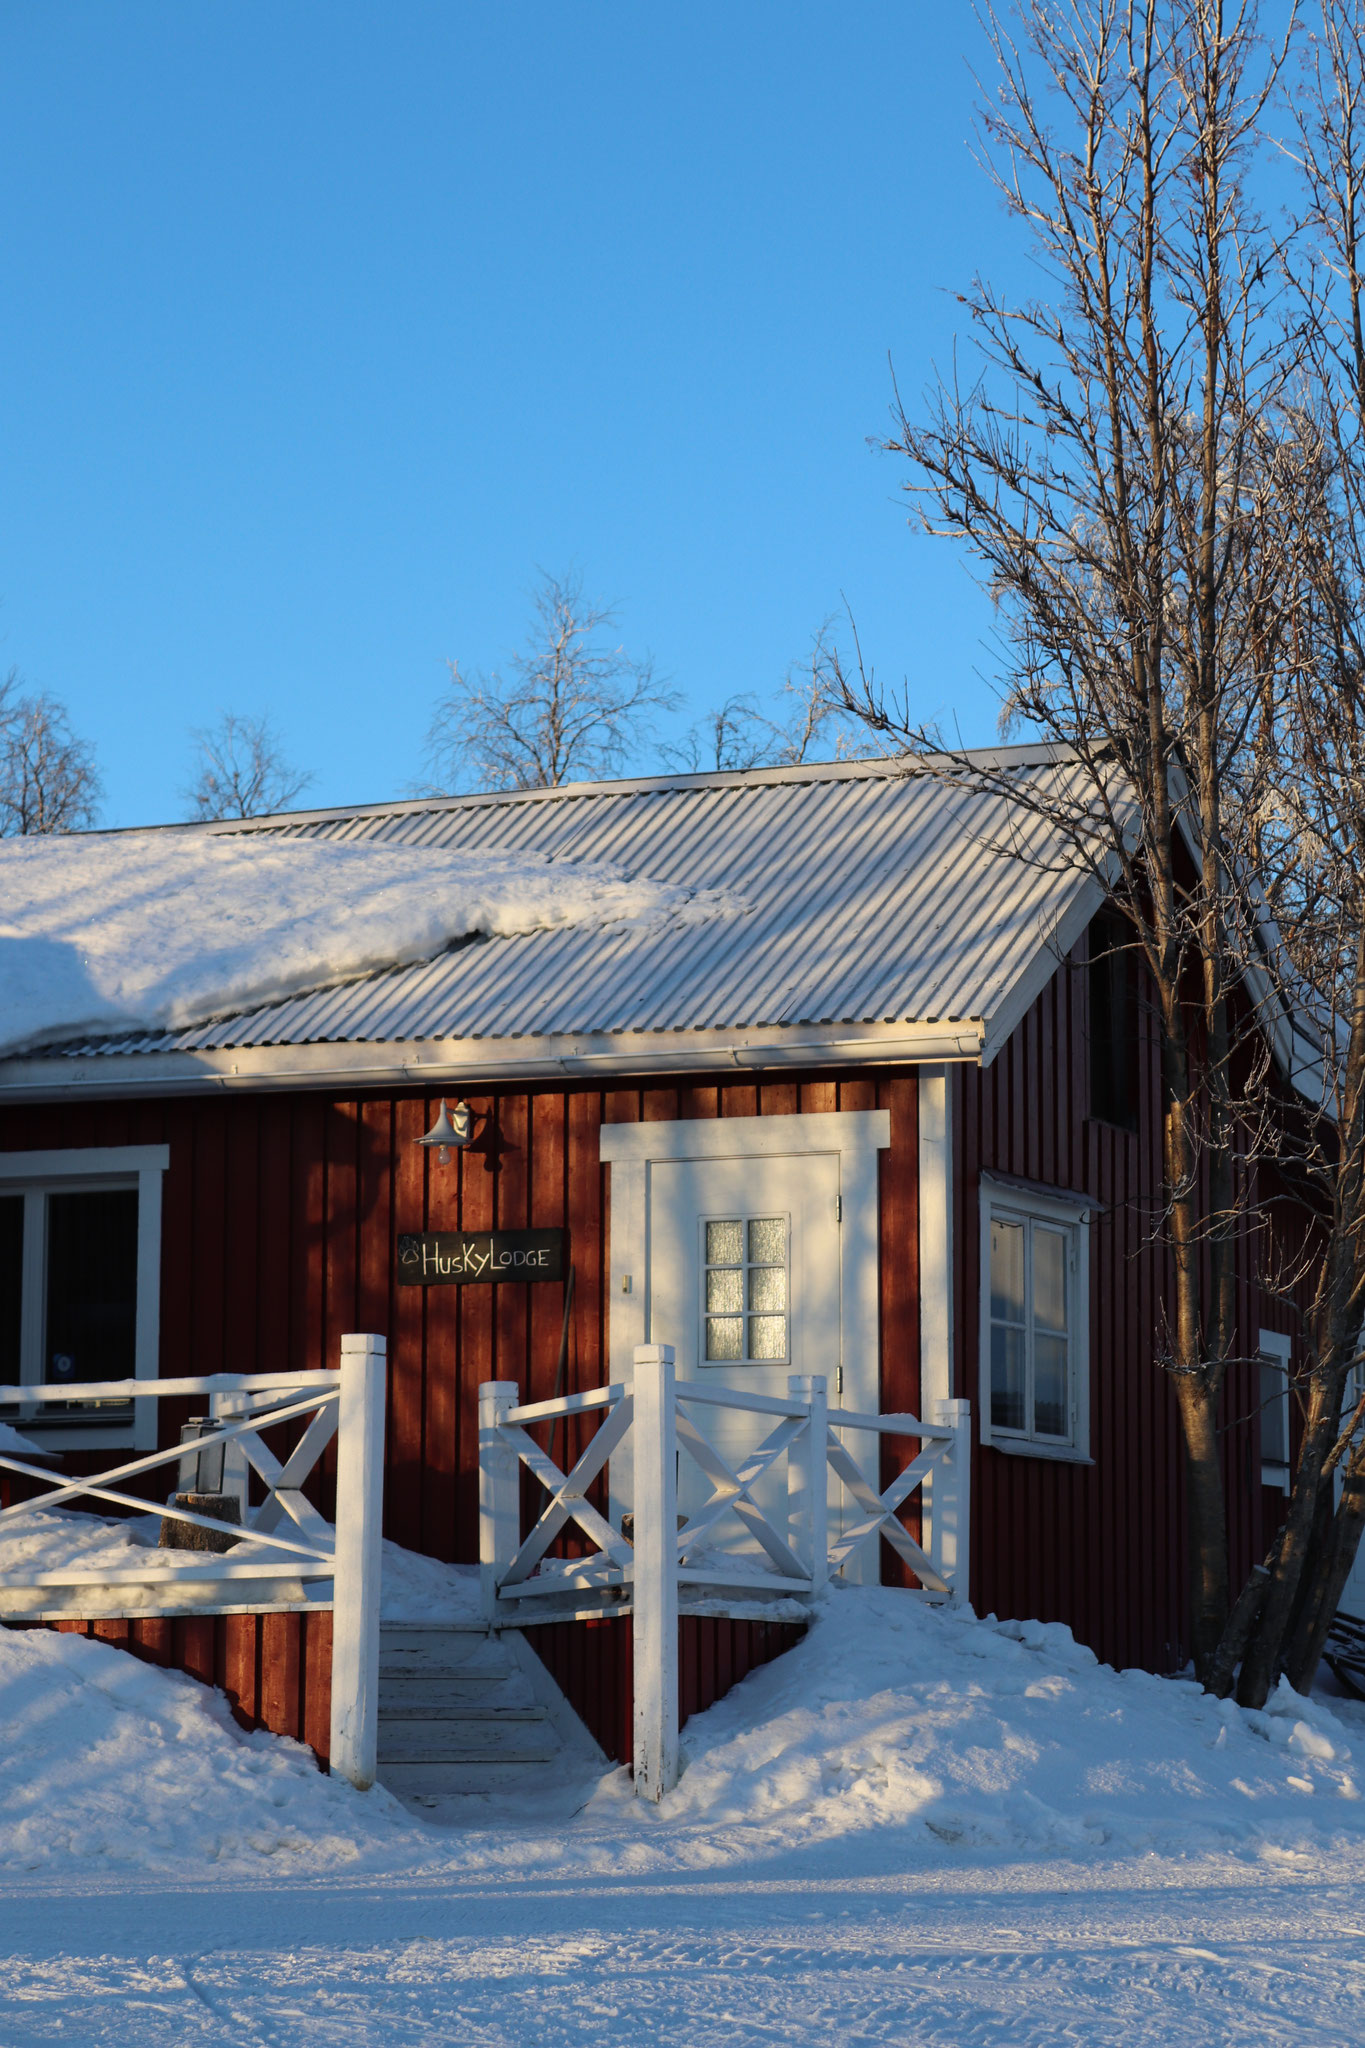 Winter in Nordschweden.